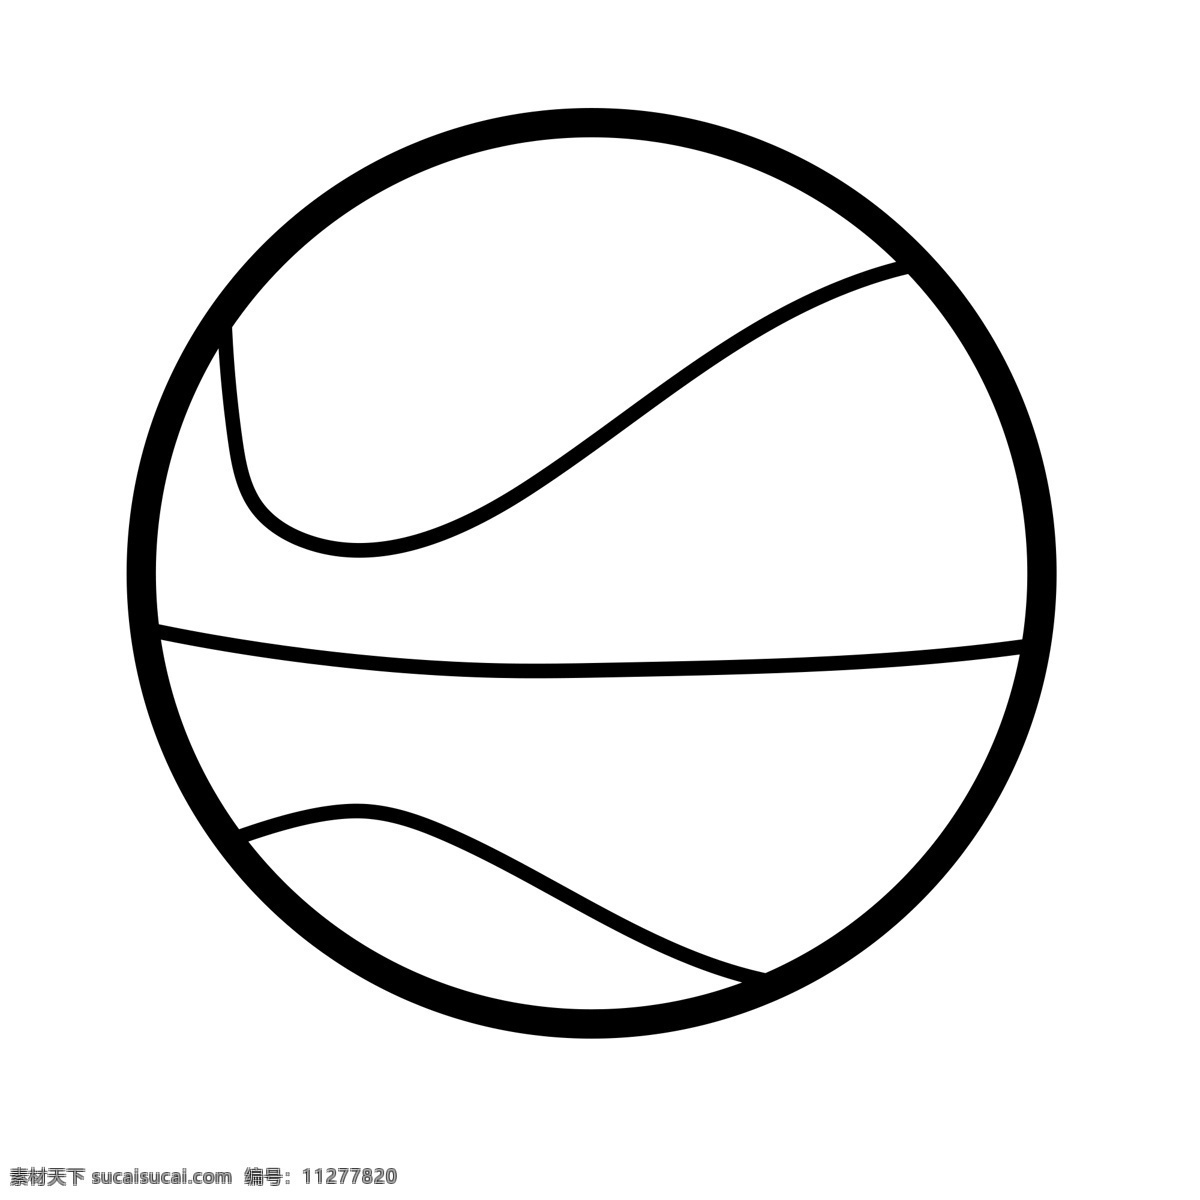 黑色 创意 圆弧 篮球 运动 元素 扁平化 ui 图标 线稿 锻炼 纹理